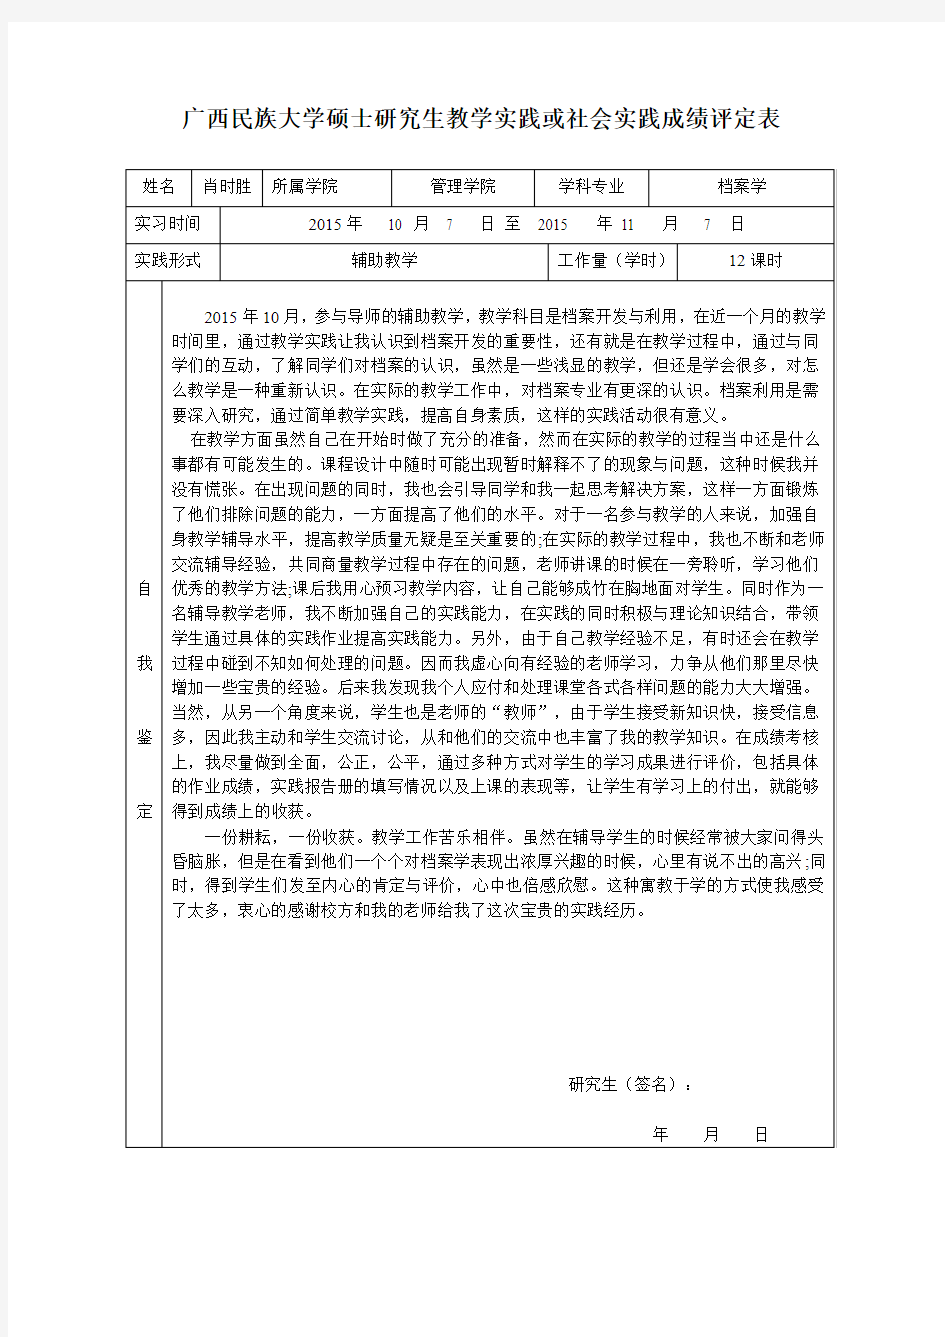 肖时胜广西民族大学硕士研究生教学实践或社会实践成绩评定表